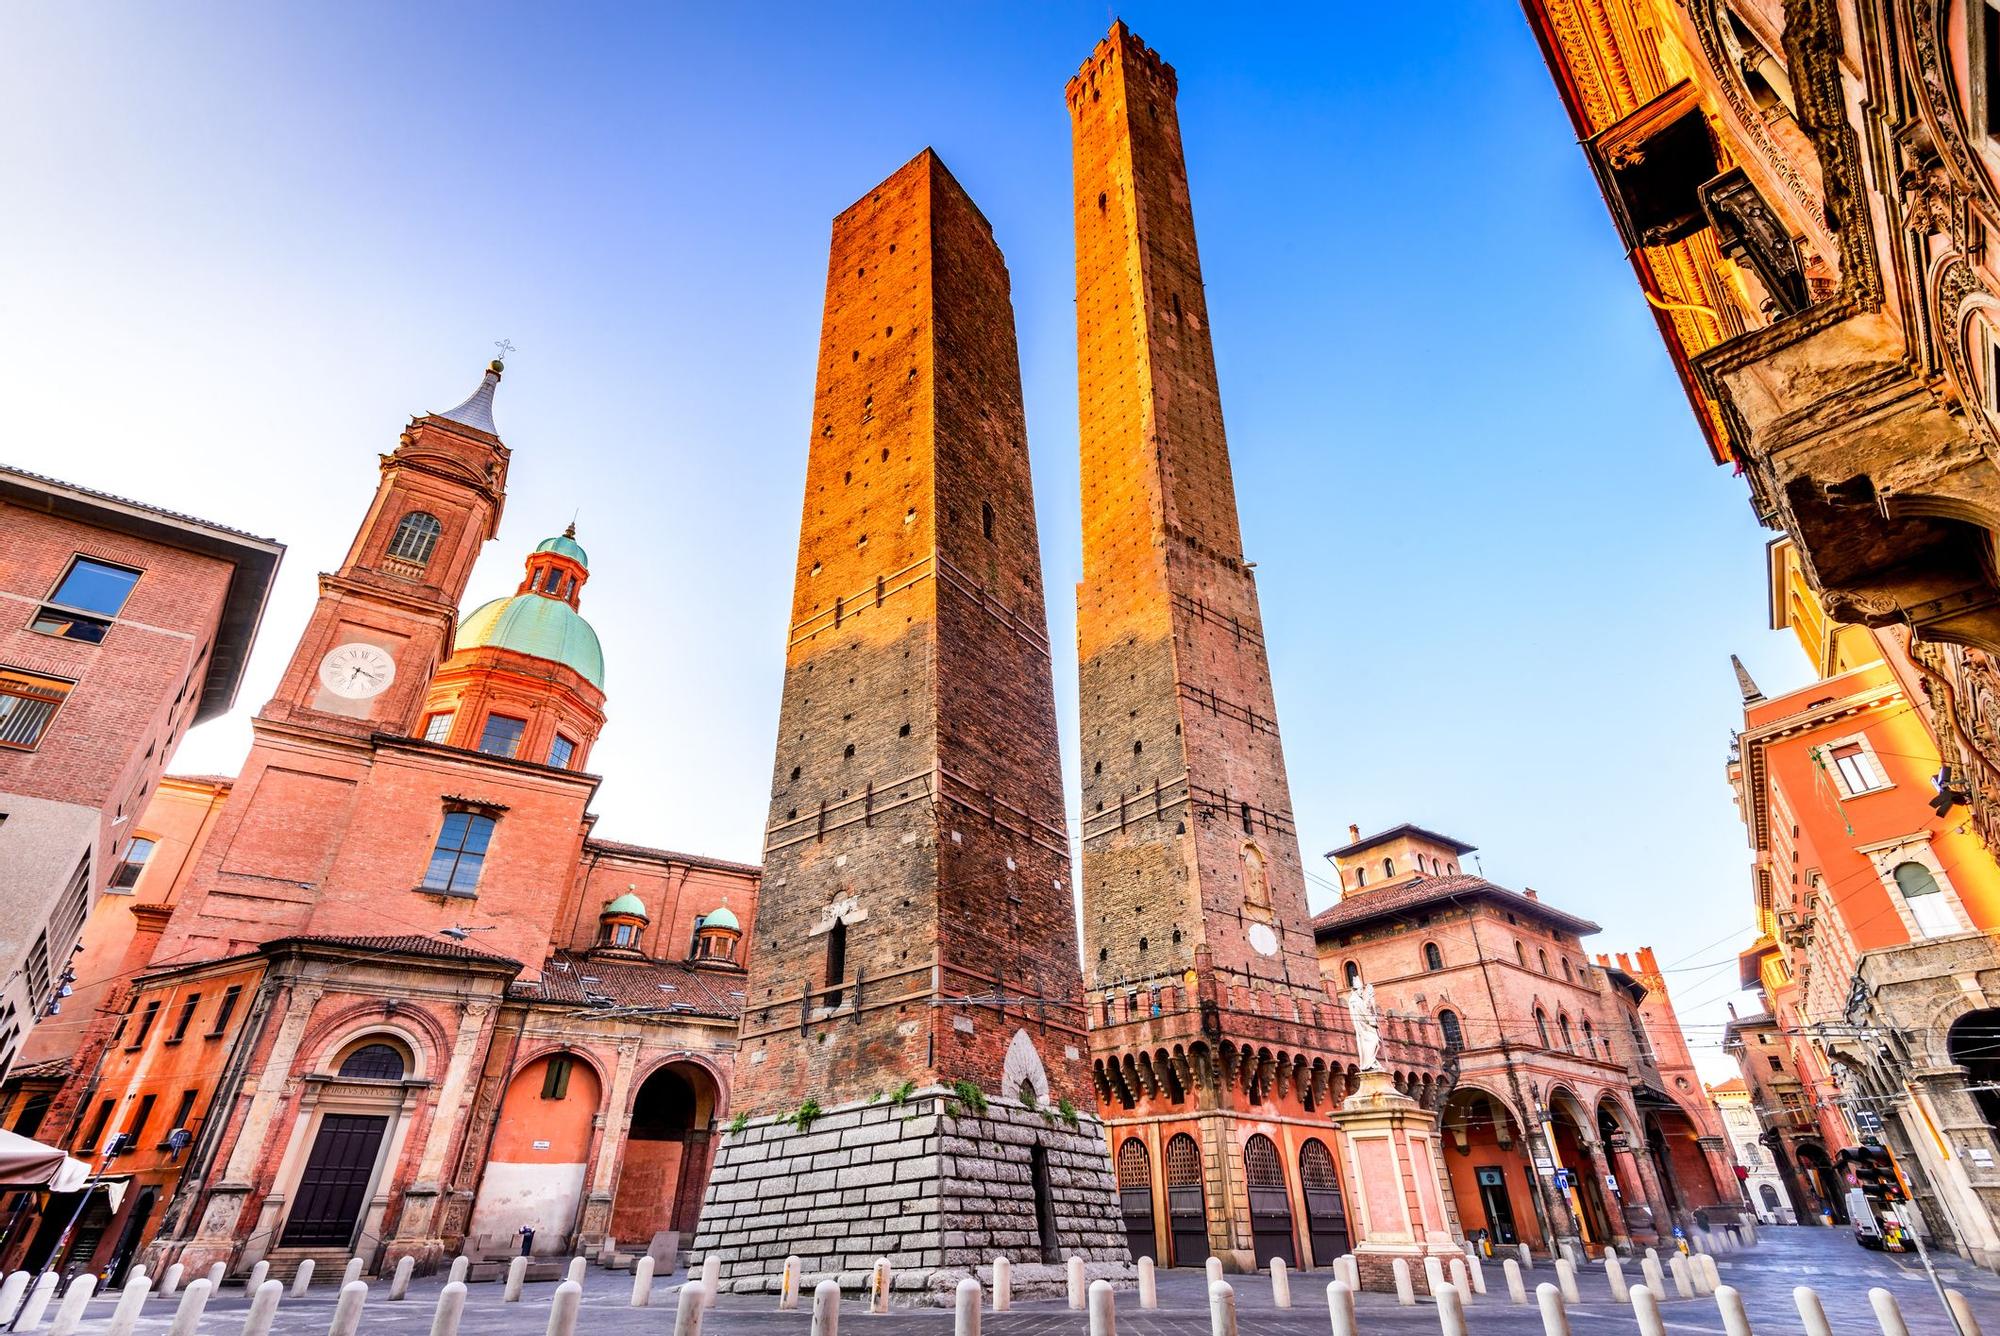 Las torres de Bolonia son un ejemplo de la arquitectura medieval que domina la ciudad